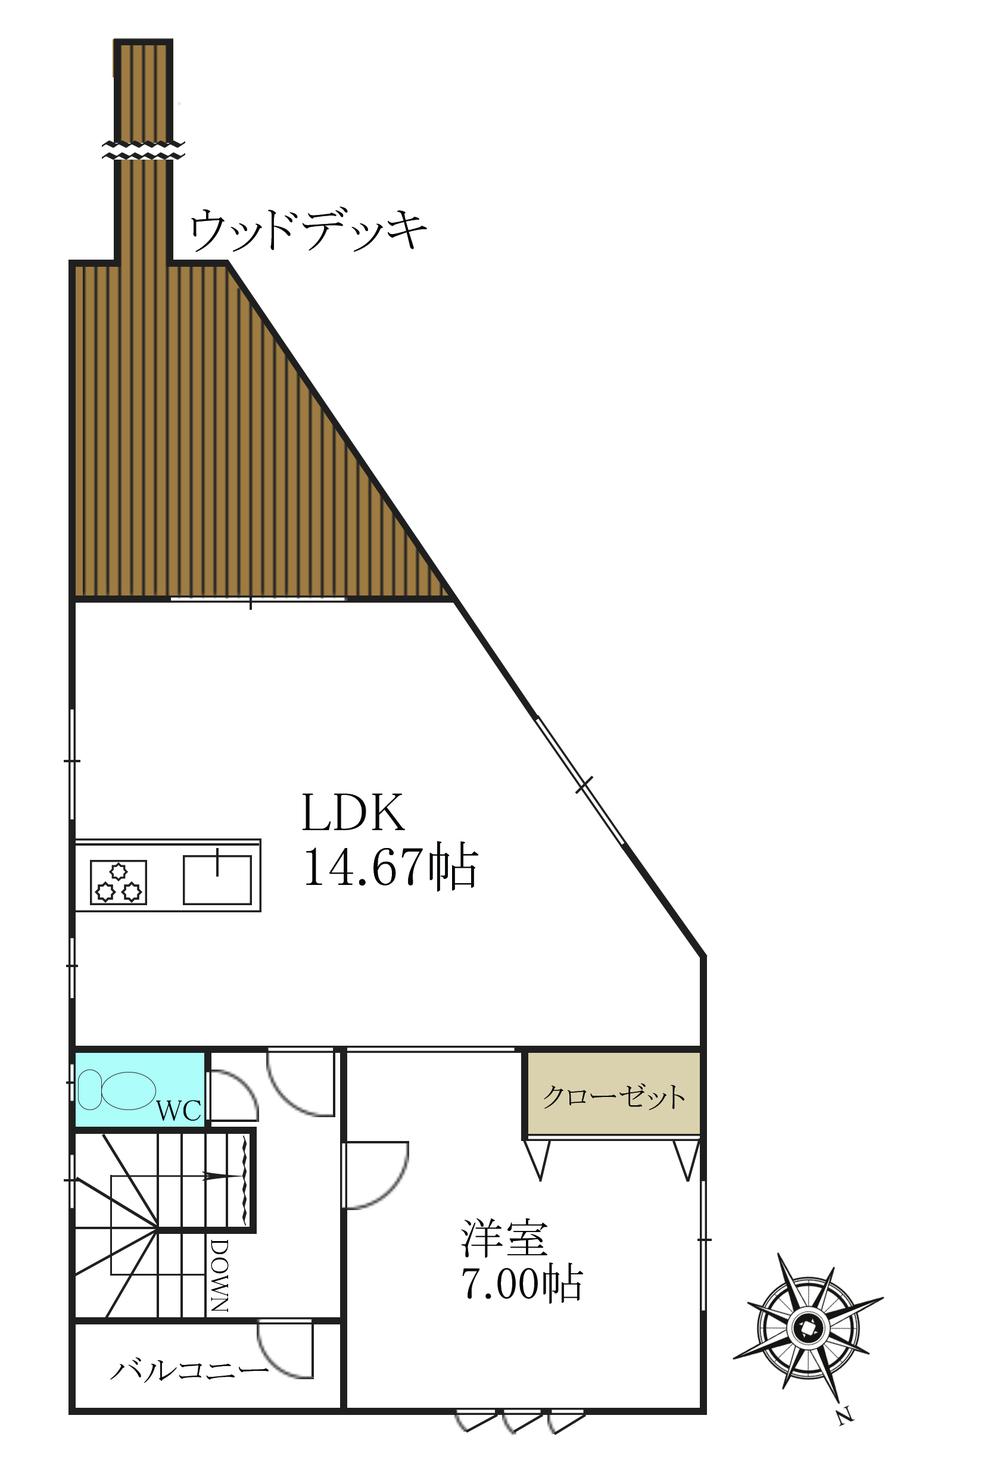 Floor plan. 29,800,000 yen, 3LDK, Land area 212.24 sq m , It is a building area of ​​83.62 sq m 2F Floor Plan.